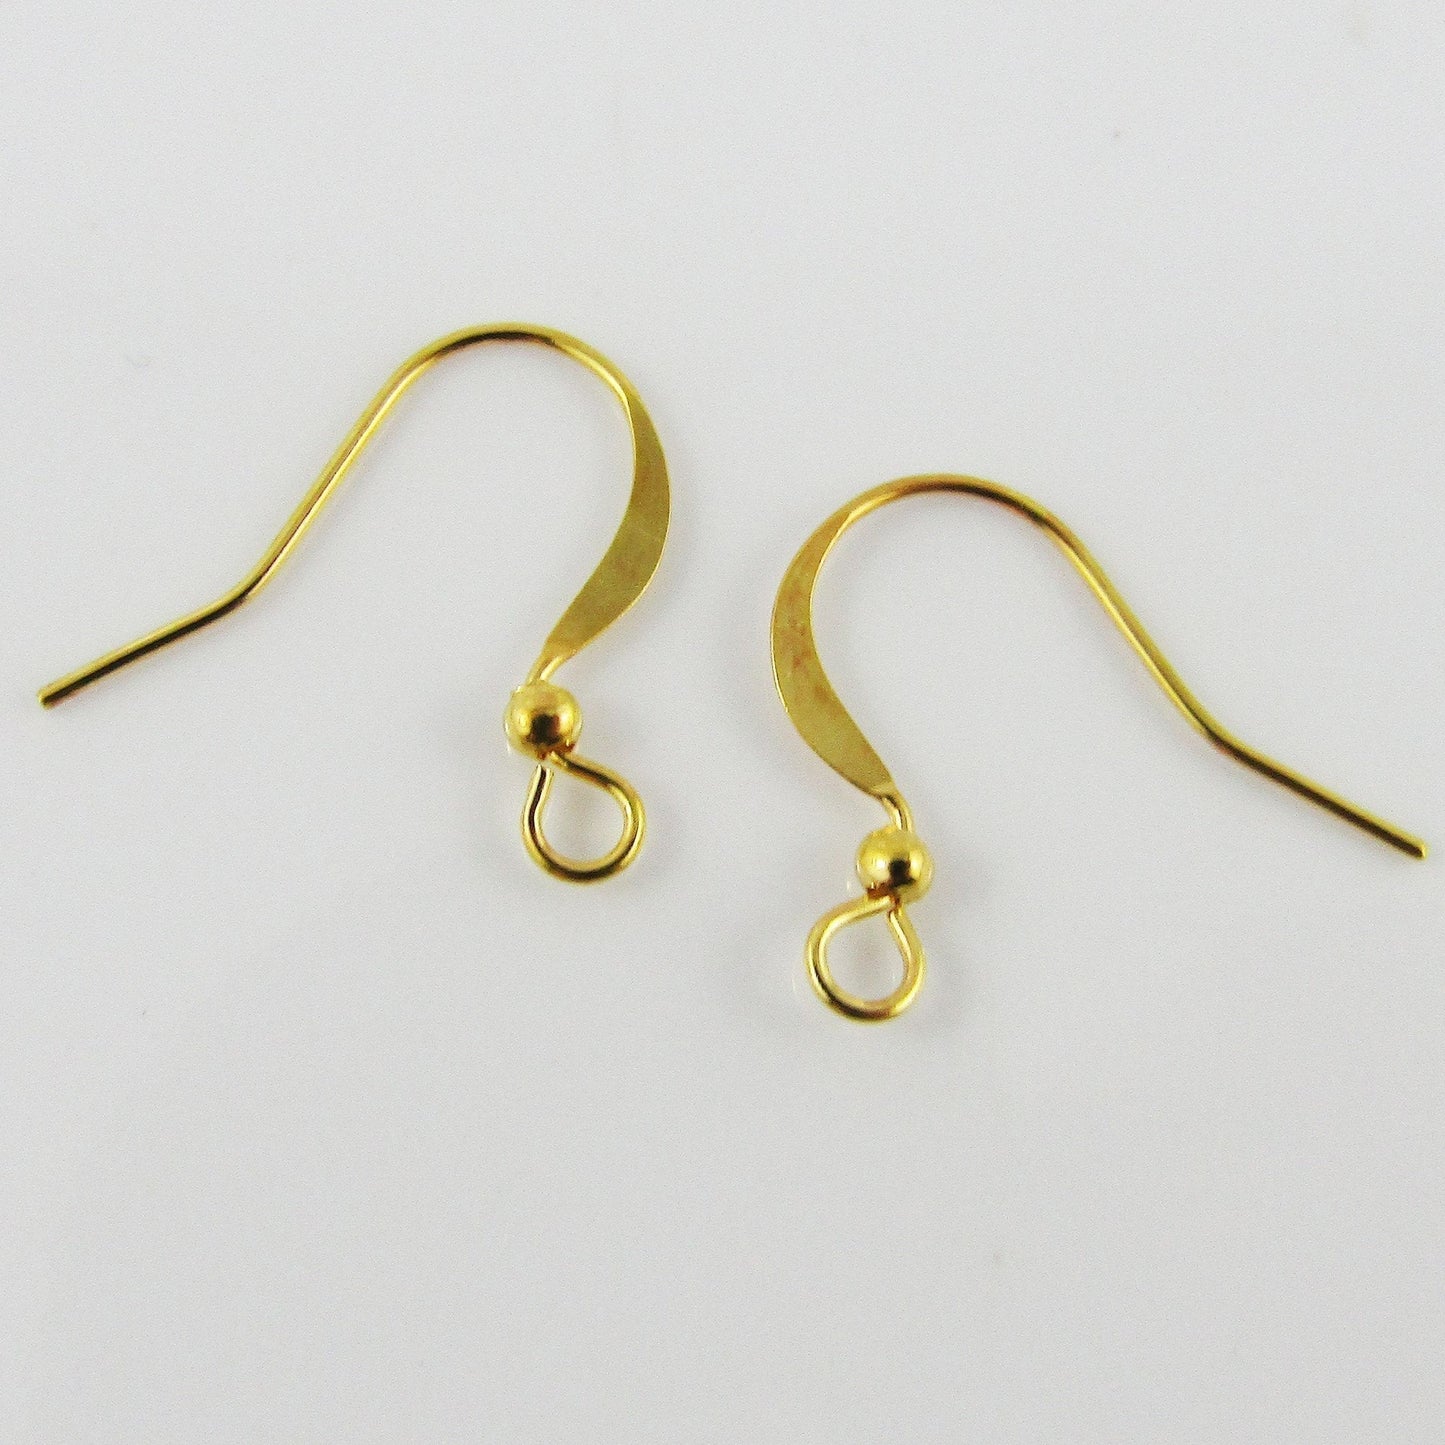 Bulk 20pce (10 Pair) DIY Earring Hook Finding BRASS 20x17mm 0.8mm Pin Gold